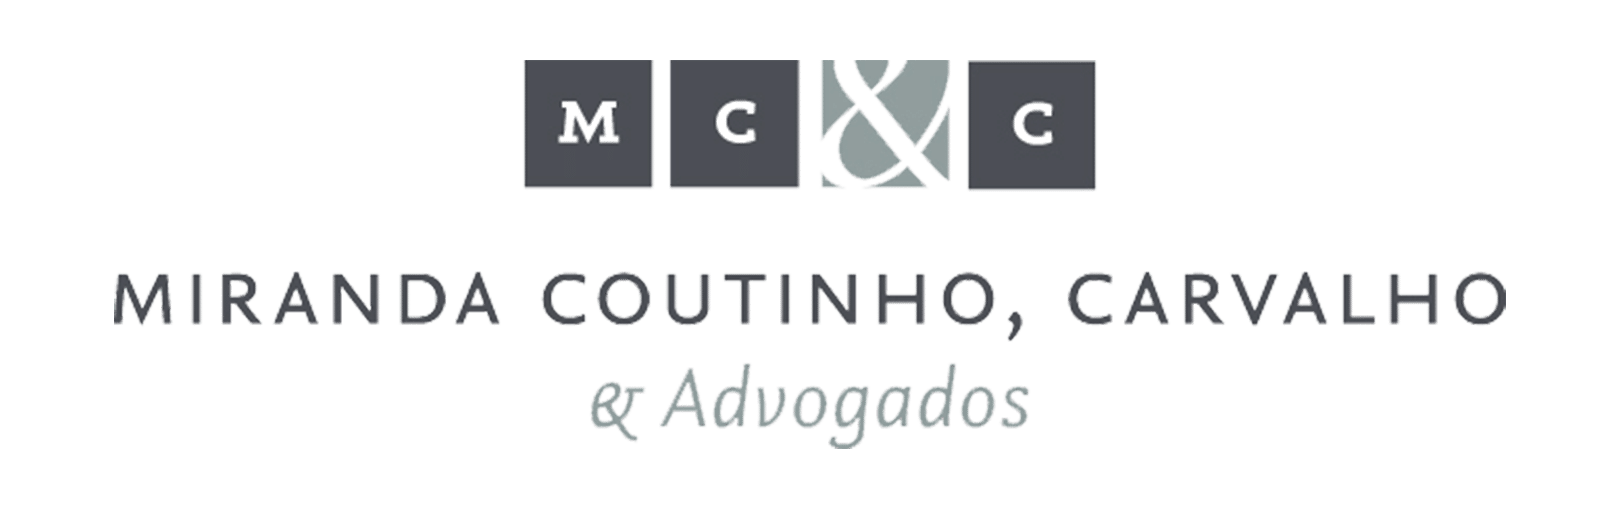 Marketing Jurídico - Miranda Coutinho